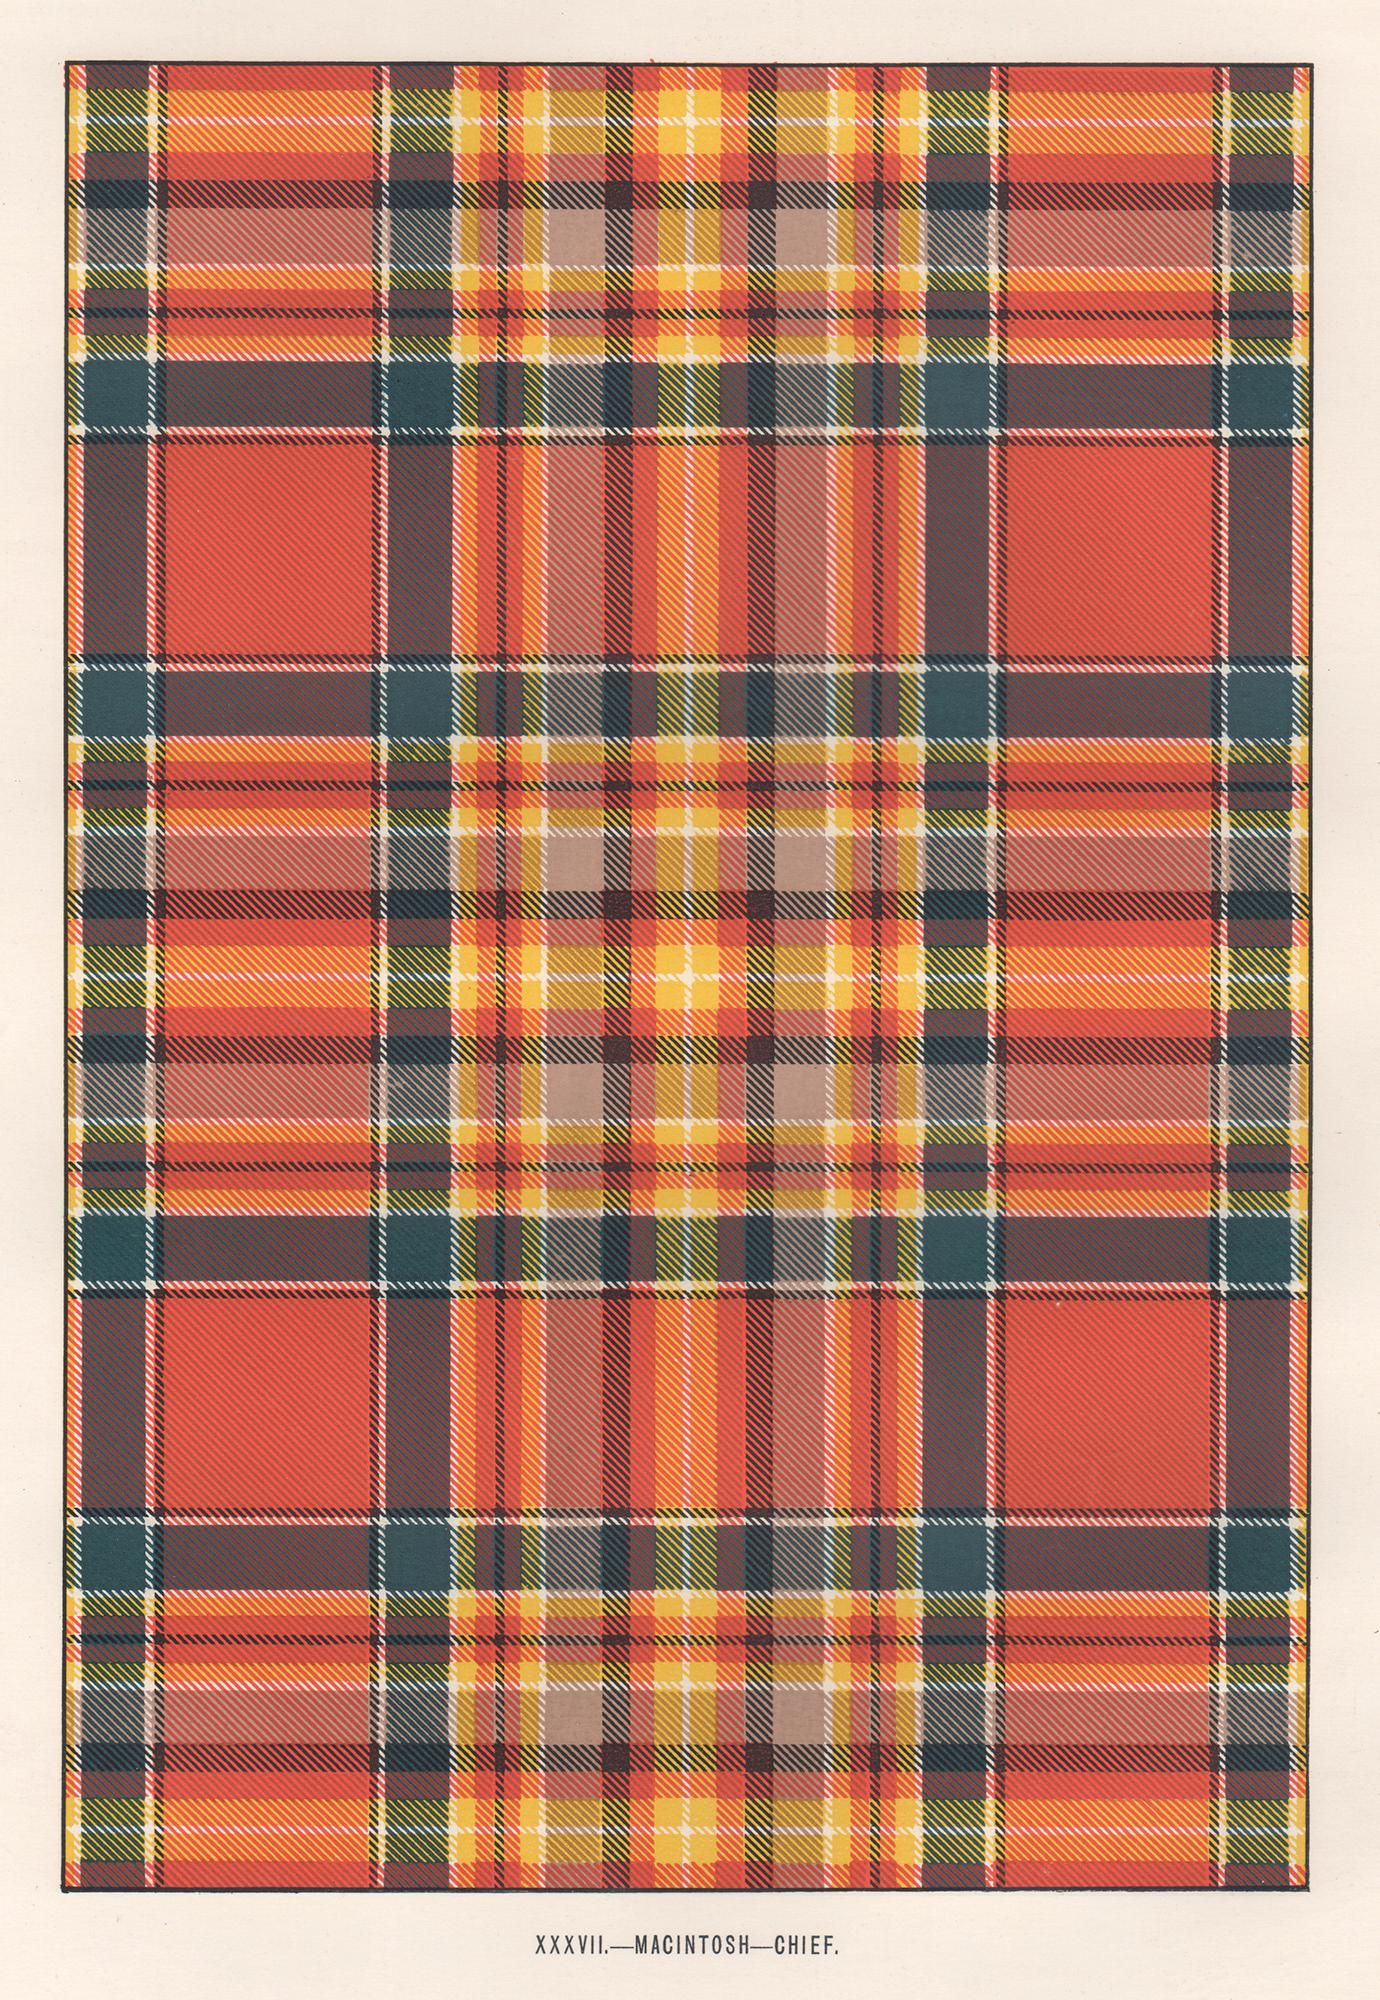 Interior Print Unknown - Lithographie de MacIntosh - Chief (tartan), Écosse écossaise de conception artistique